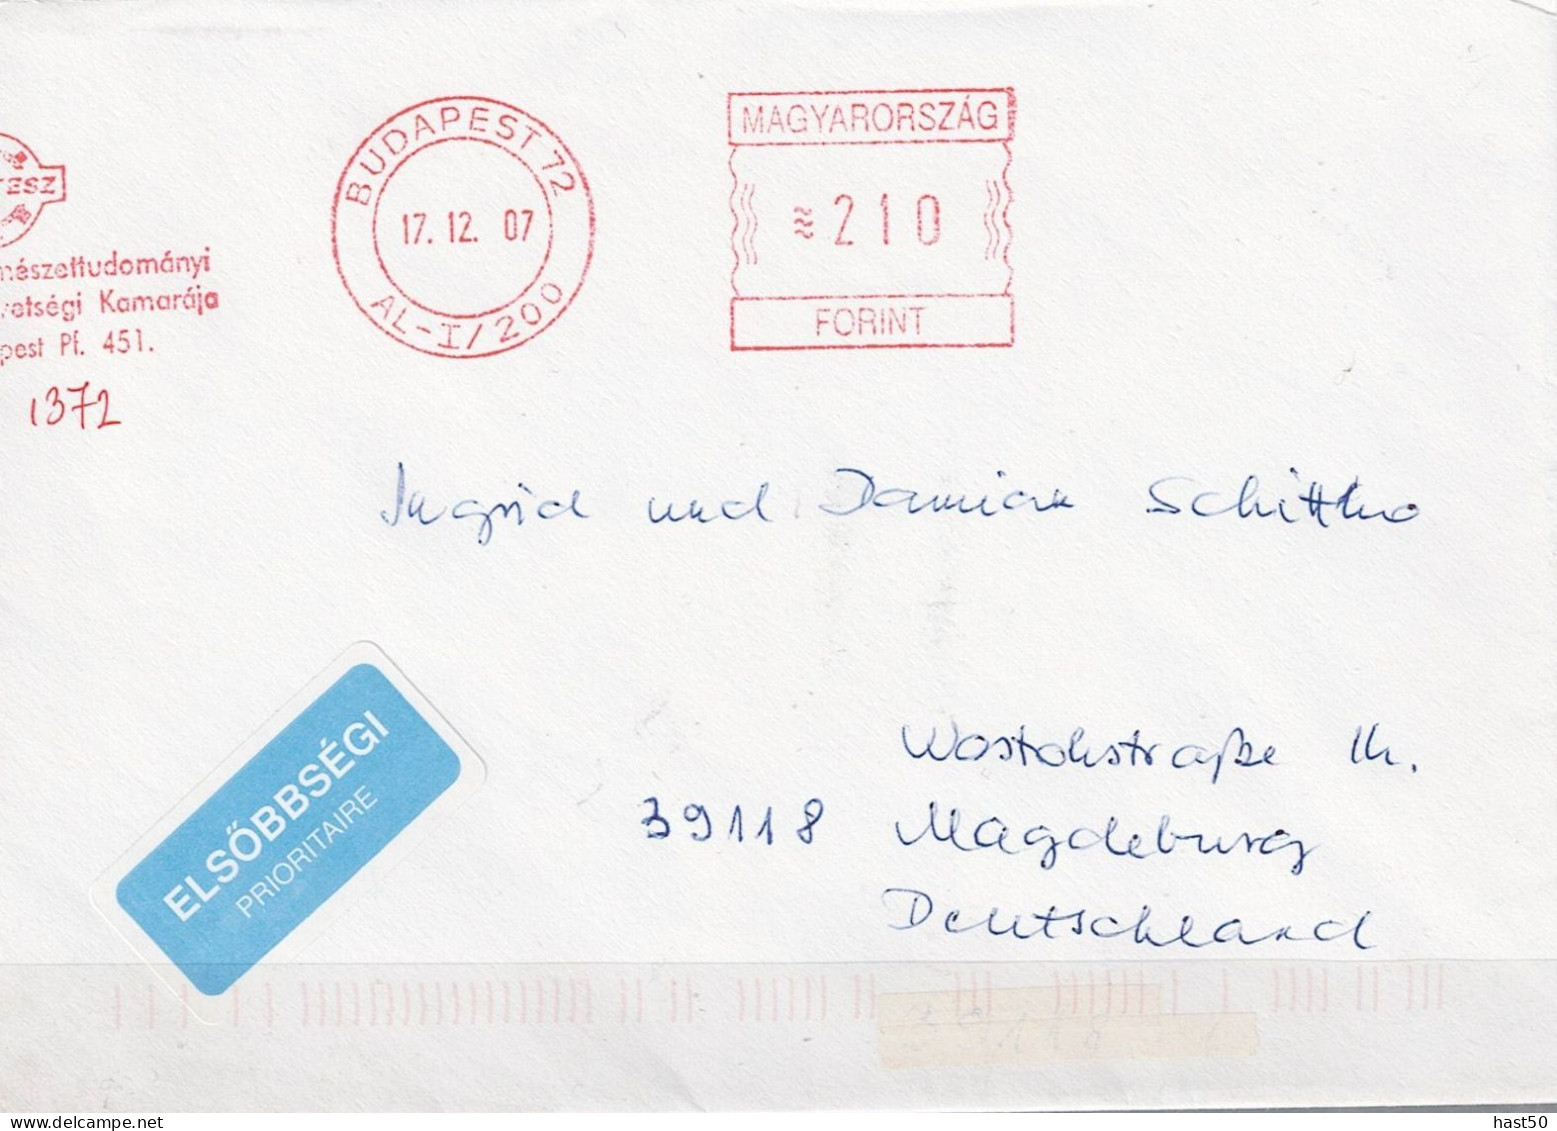 Ungarn Hungary Hongrie - Brief Mit Maschinenwerbestempel MTESZ Budapest Vom 17.12.07 Nach Magdeburg - Poststempel (Marcophilie)